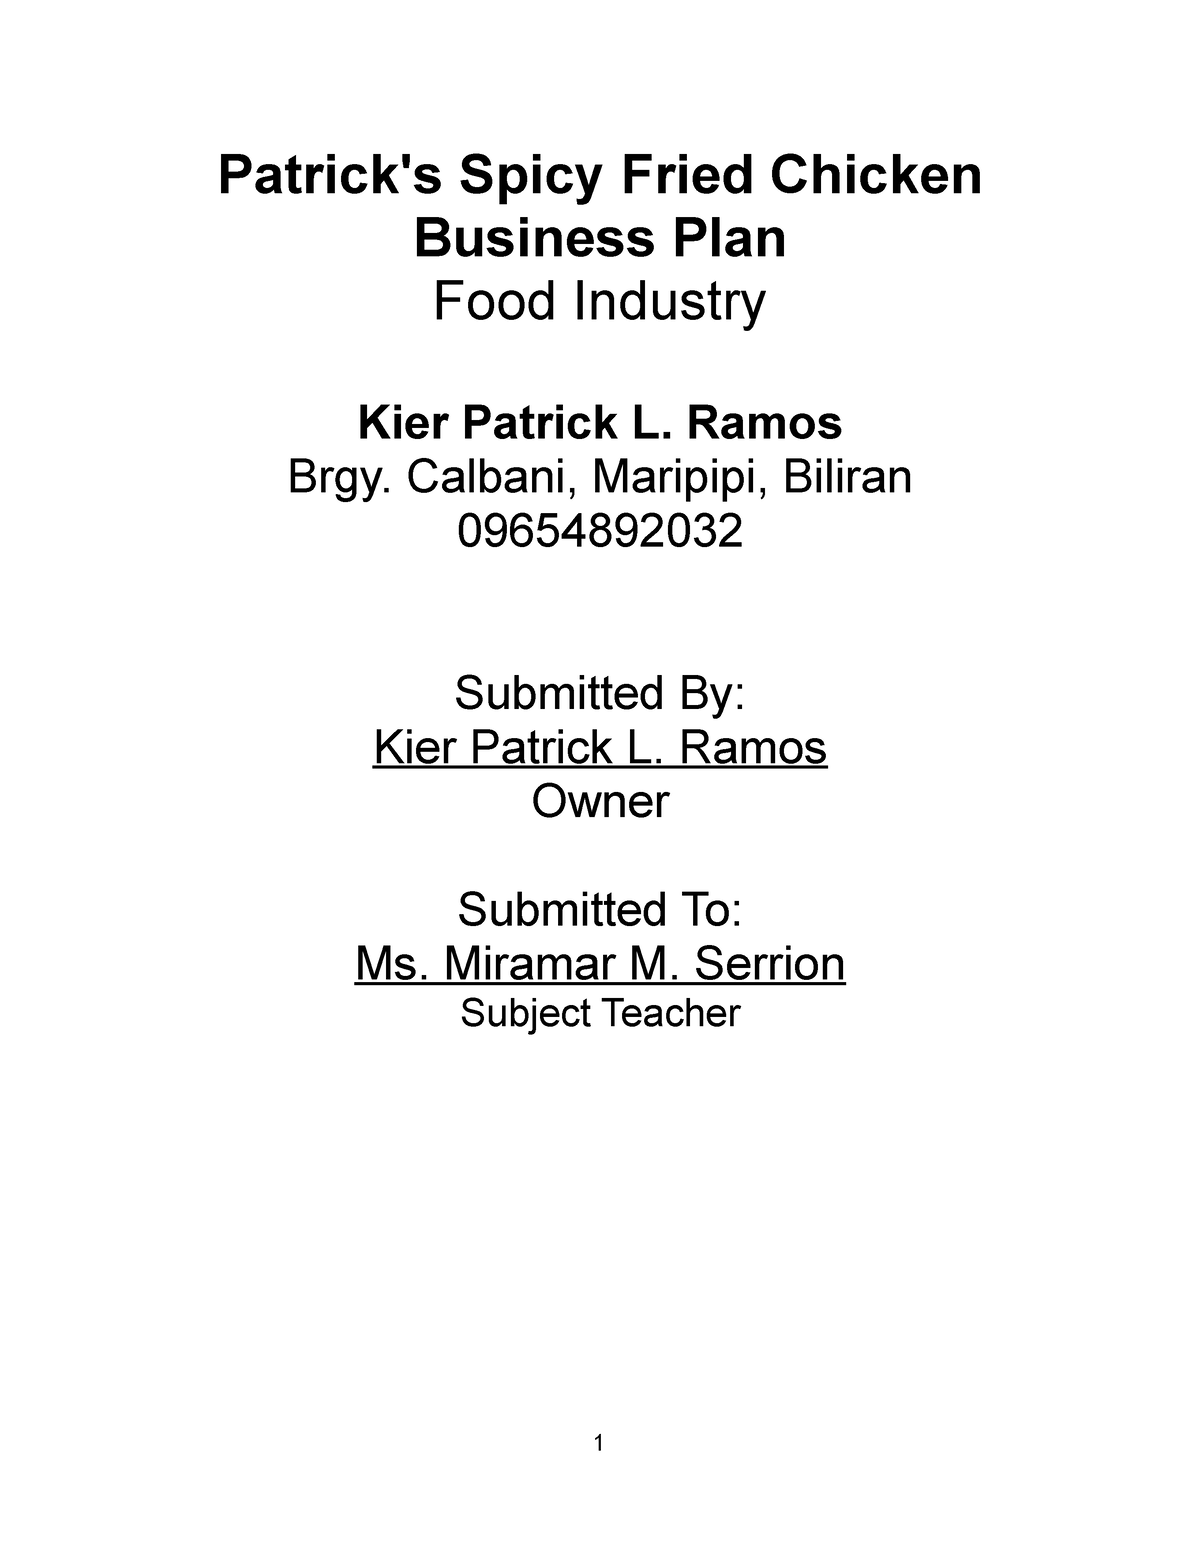 chicken business plan ppt